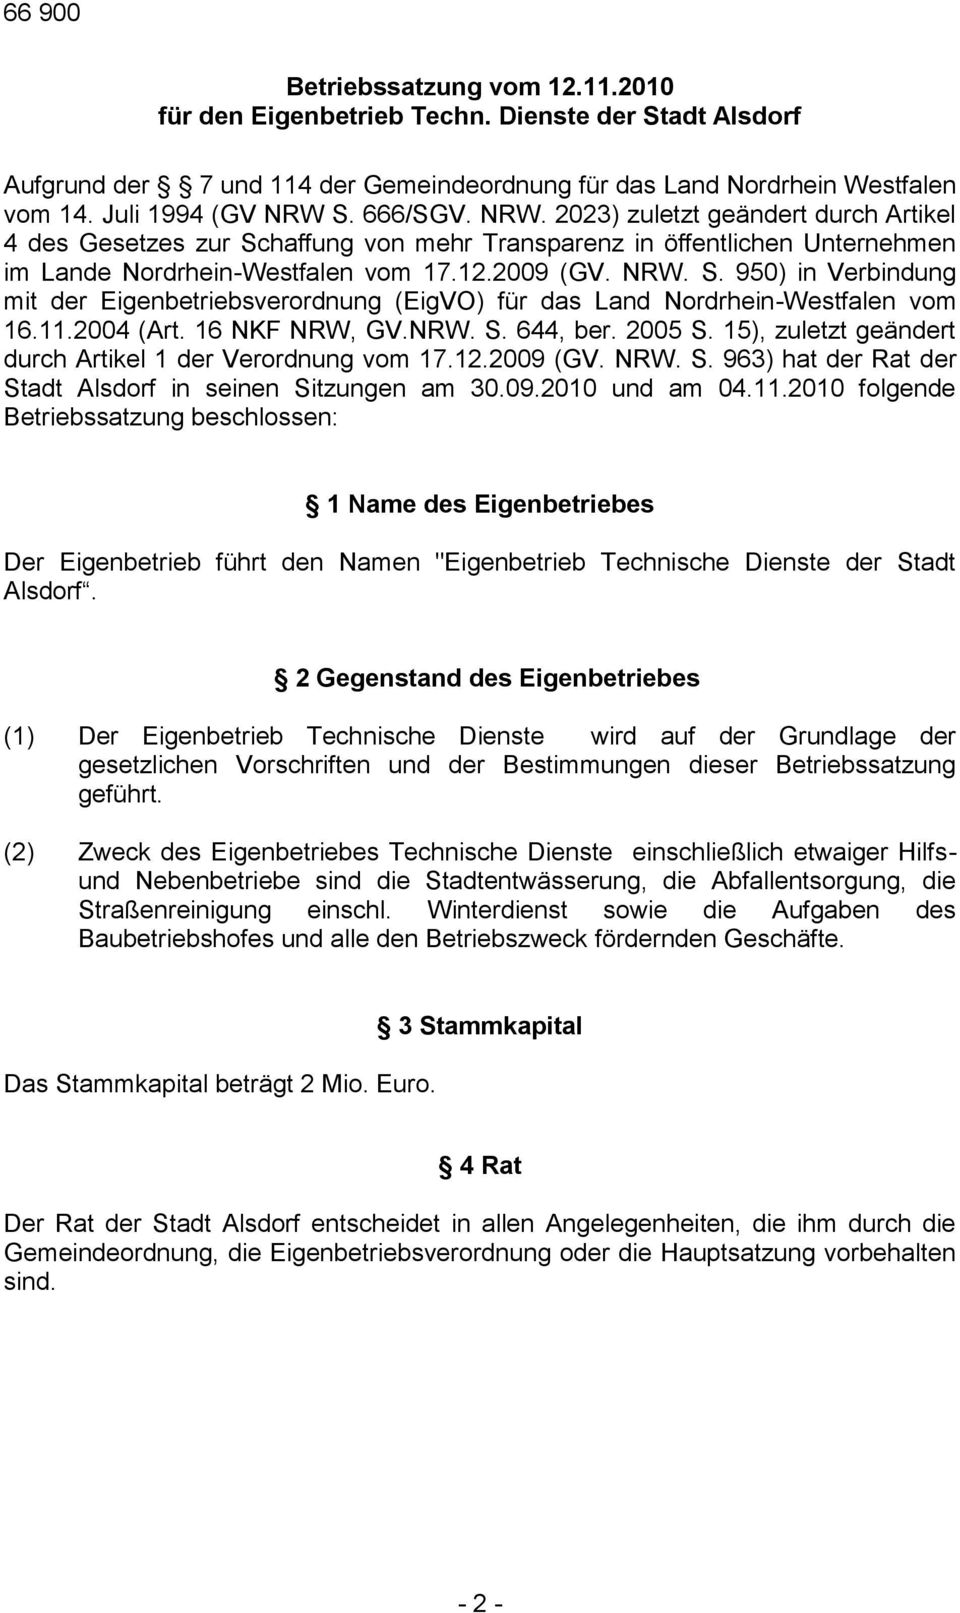 11.2004 (Art. 16 NKF NRW, GV.NRW. S. 644, ber. 2005 S. 15), zuletzt geändert durch Artikel 1 der Verordnung vom 17.12.2009 (GV. NRW. S. 963) hat der Rat der Stadt Alsdorf in seinen Sitzungen am 30.09.2010 und am 04.